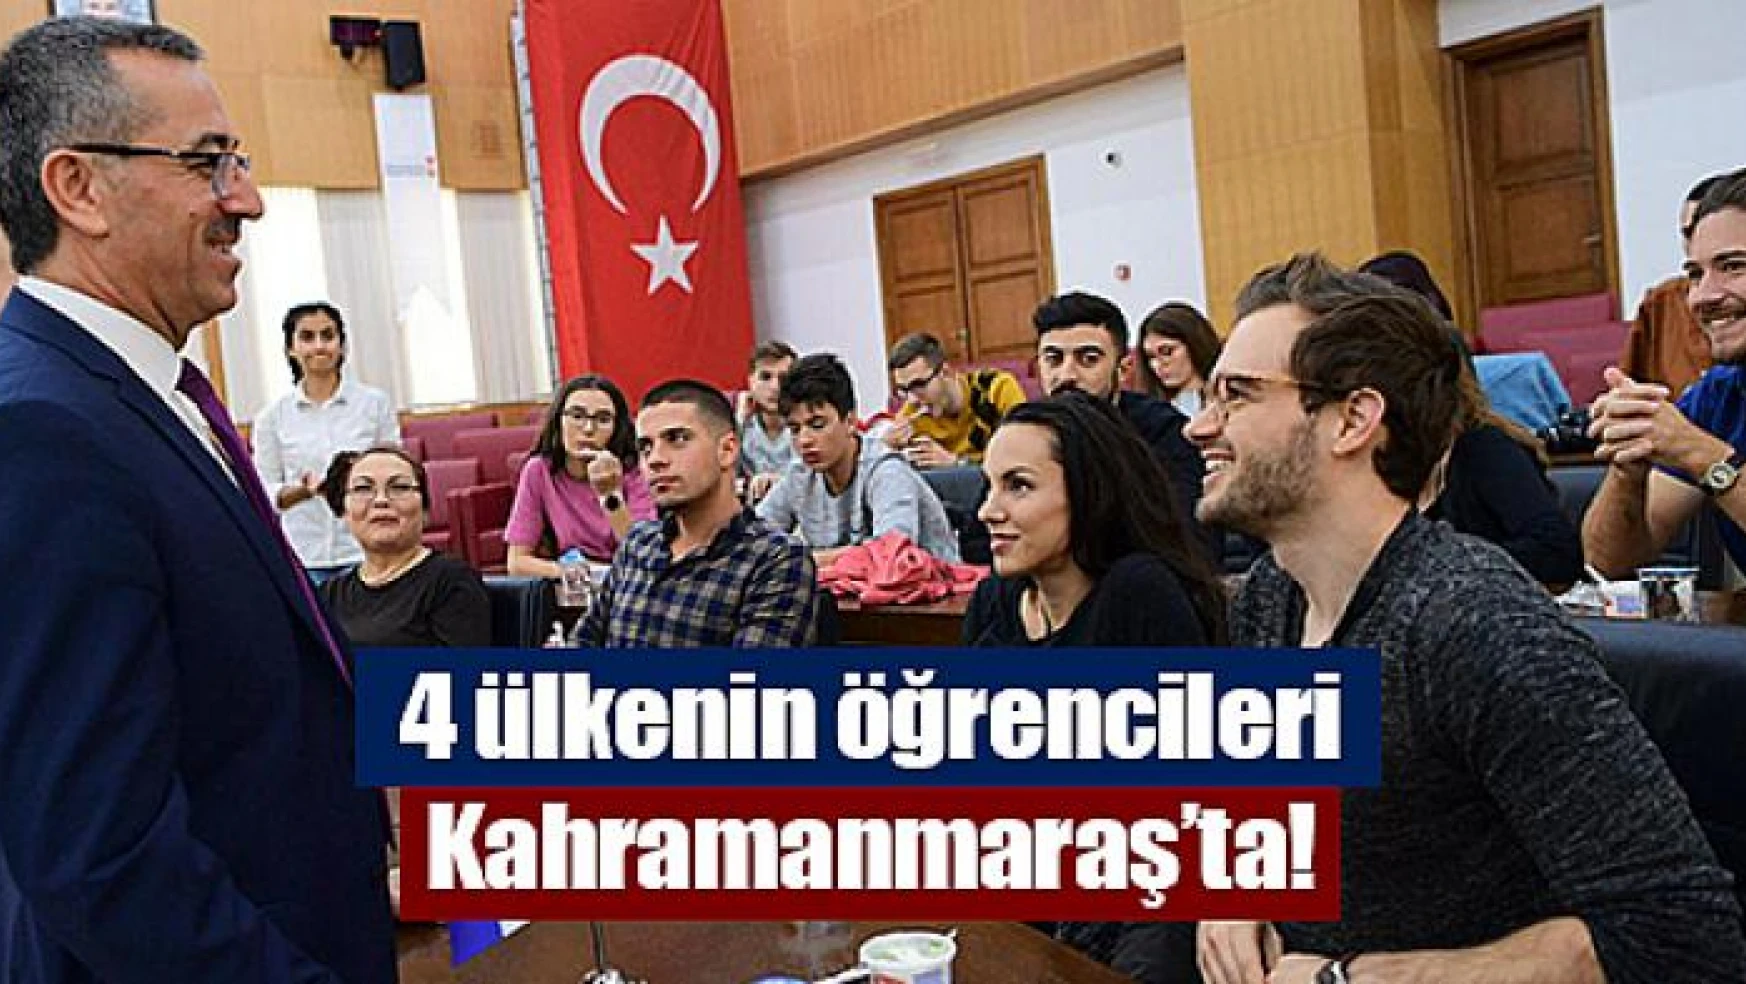 4 ülkenin öğrencileri Kahramanmaraş'ta!